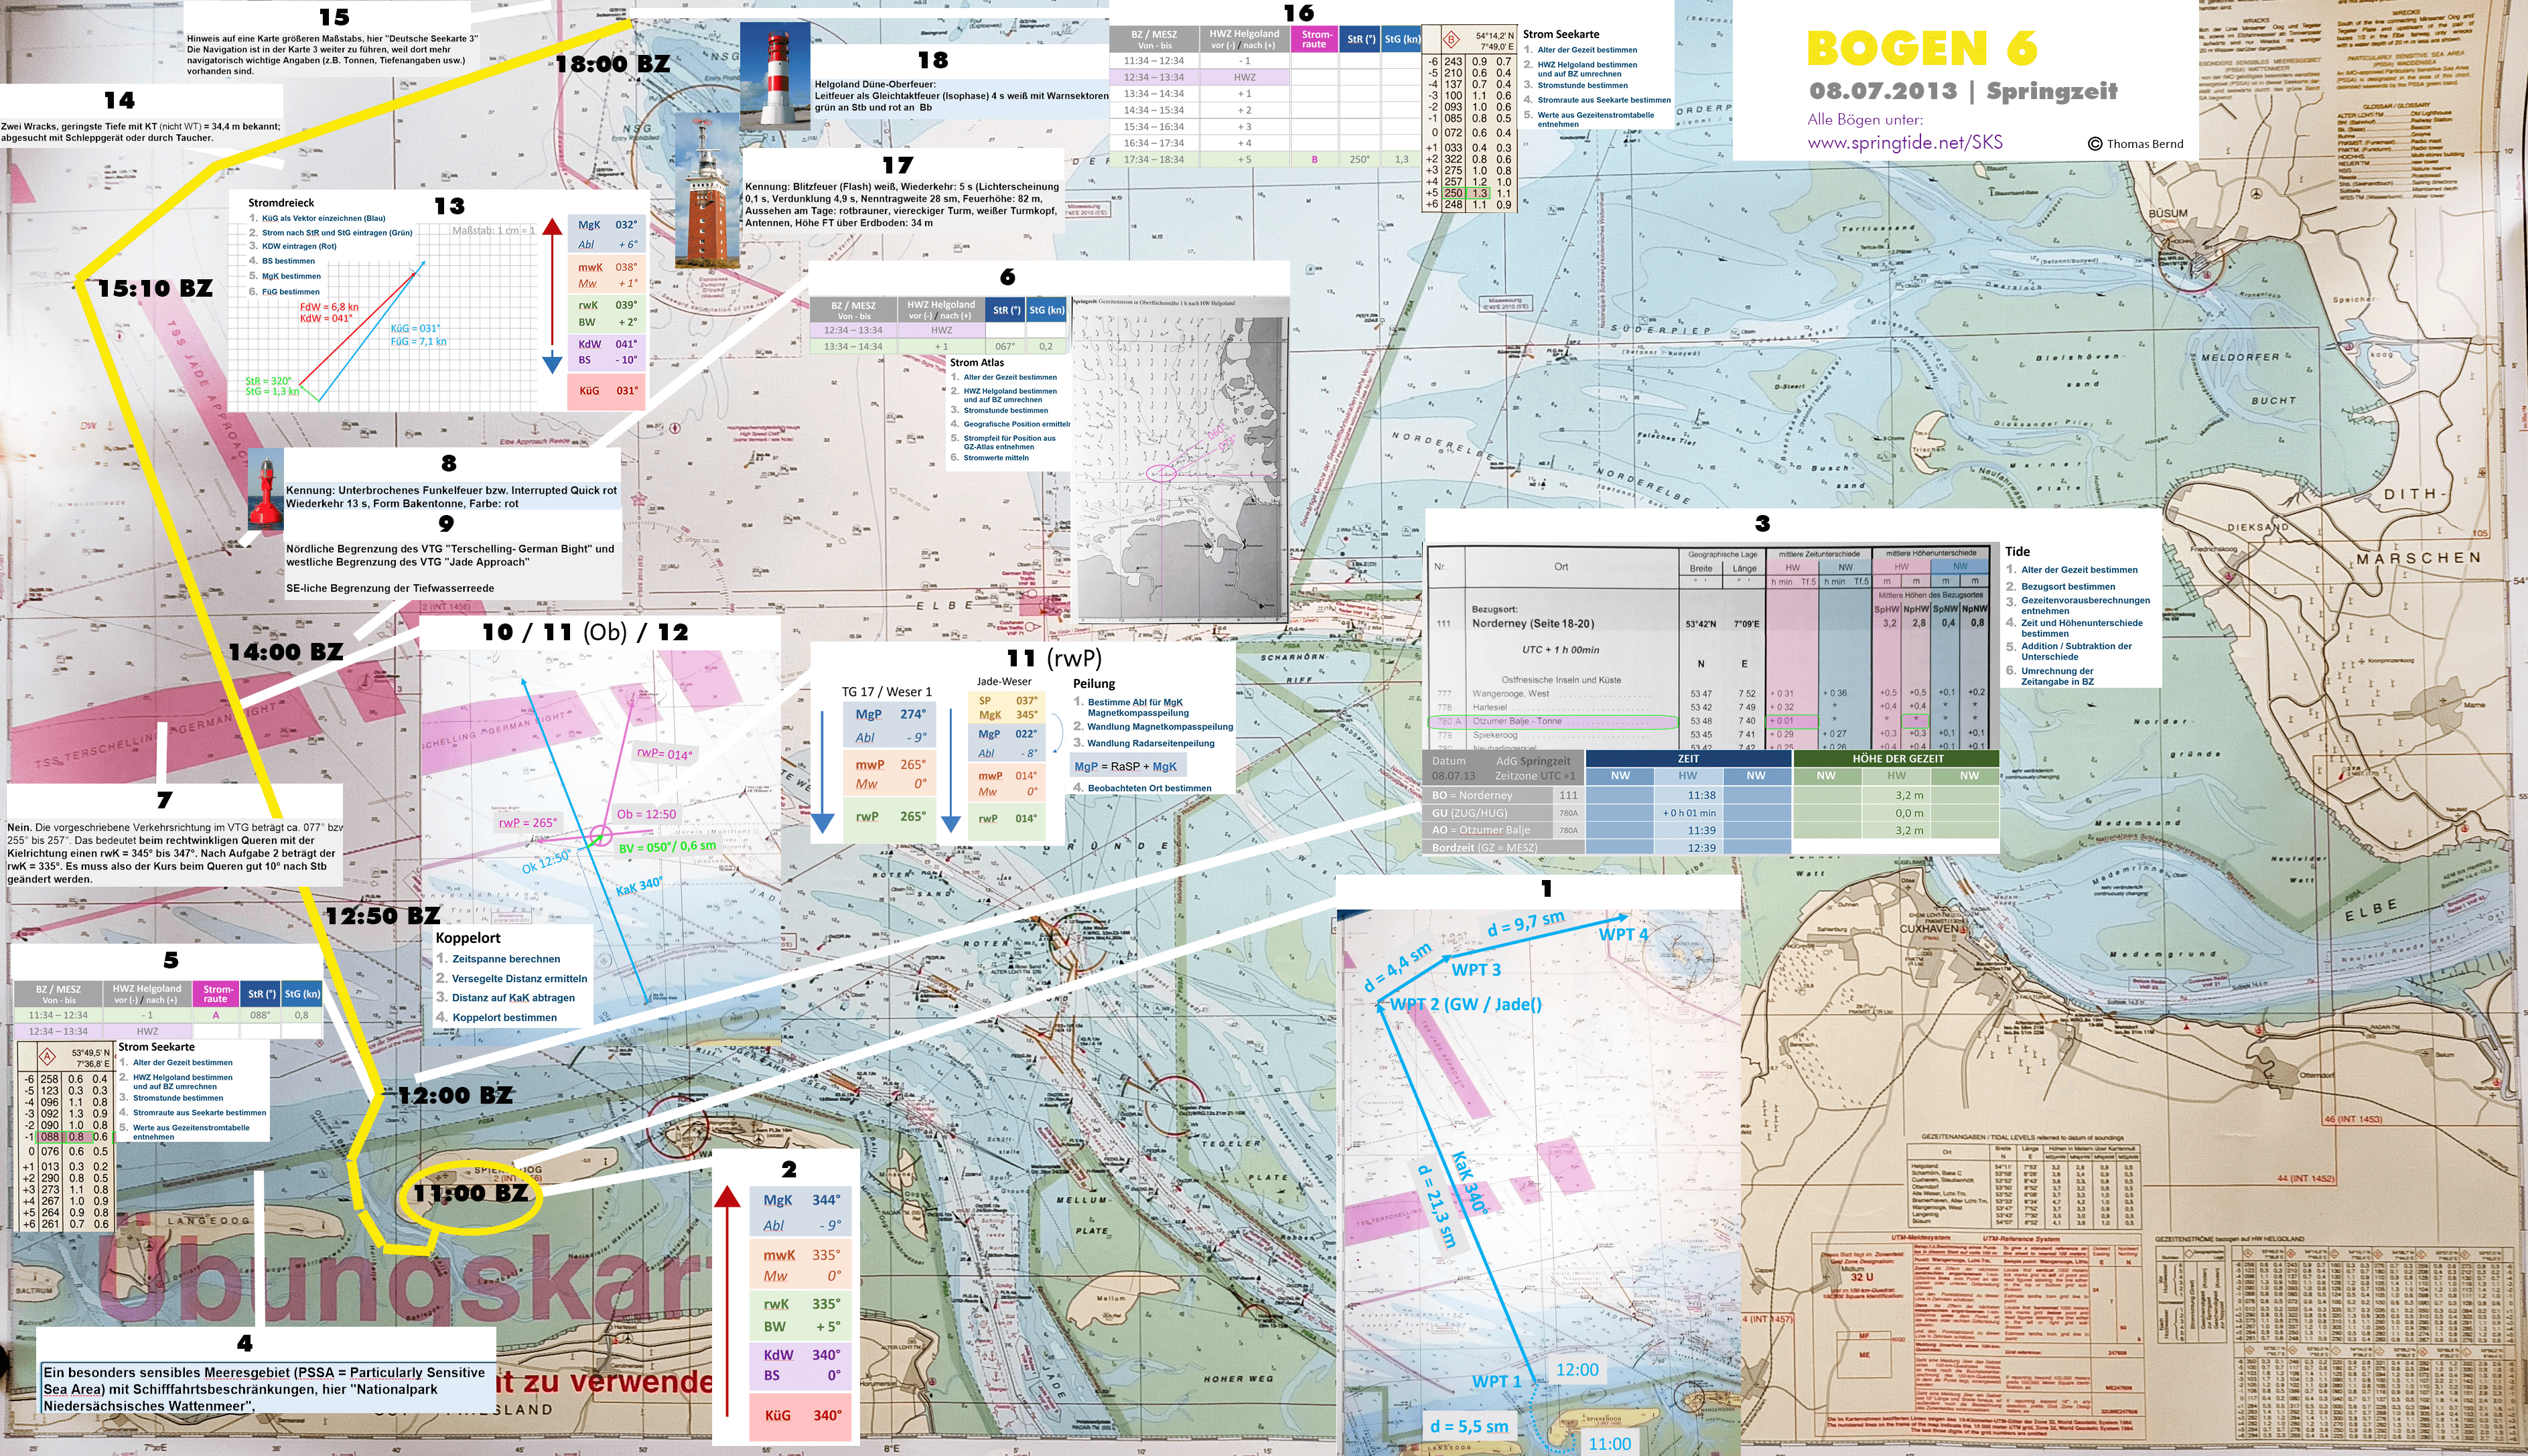 Törn des SKS Navigationsaufgabe 6 und Prüfungsbogen 6 von Spiekeroog nach Helgoland